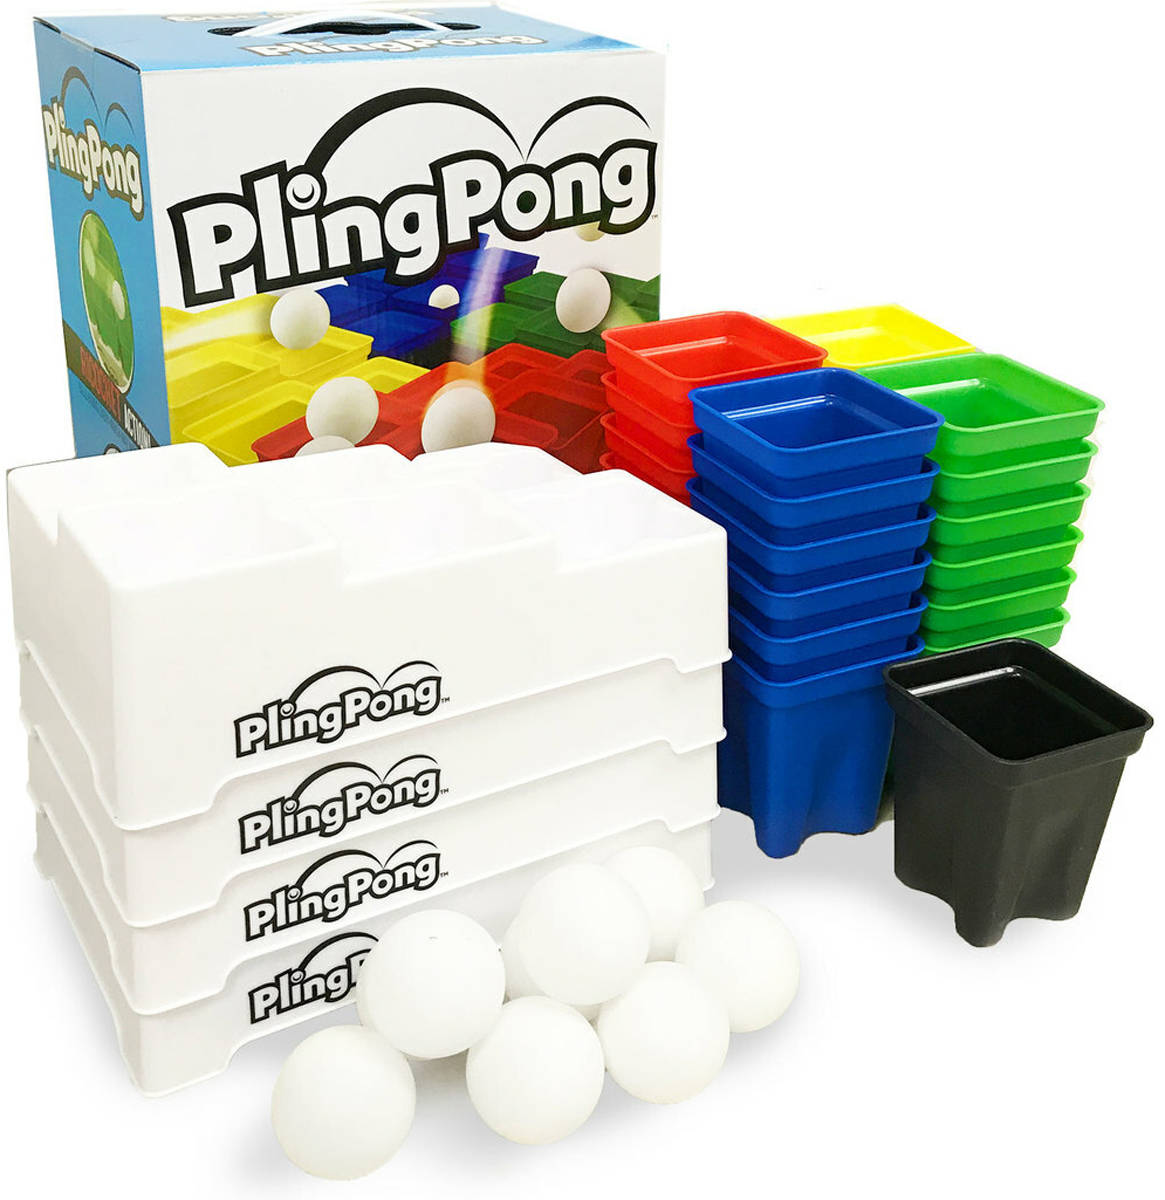 Pling Pong